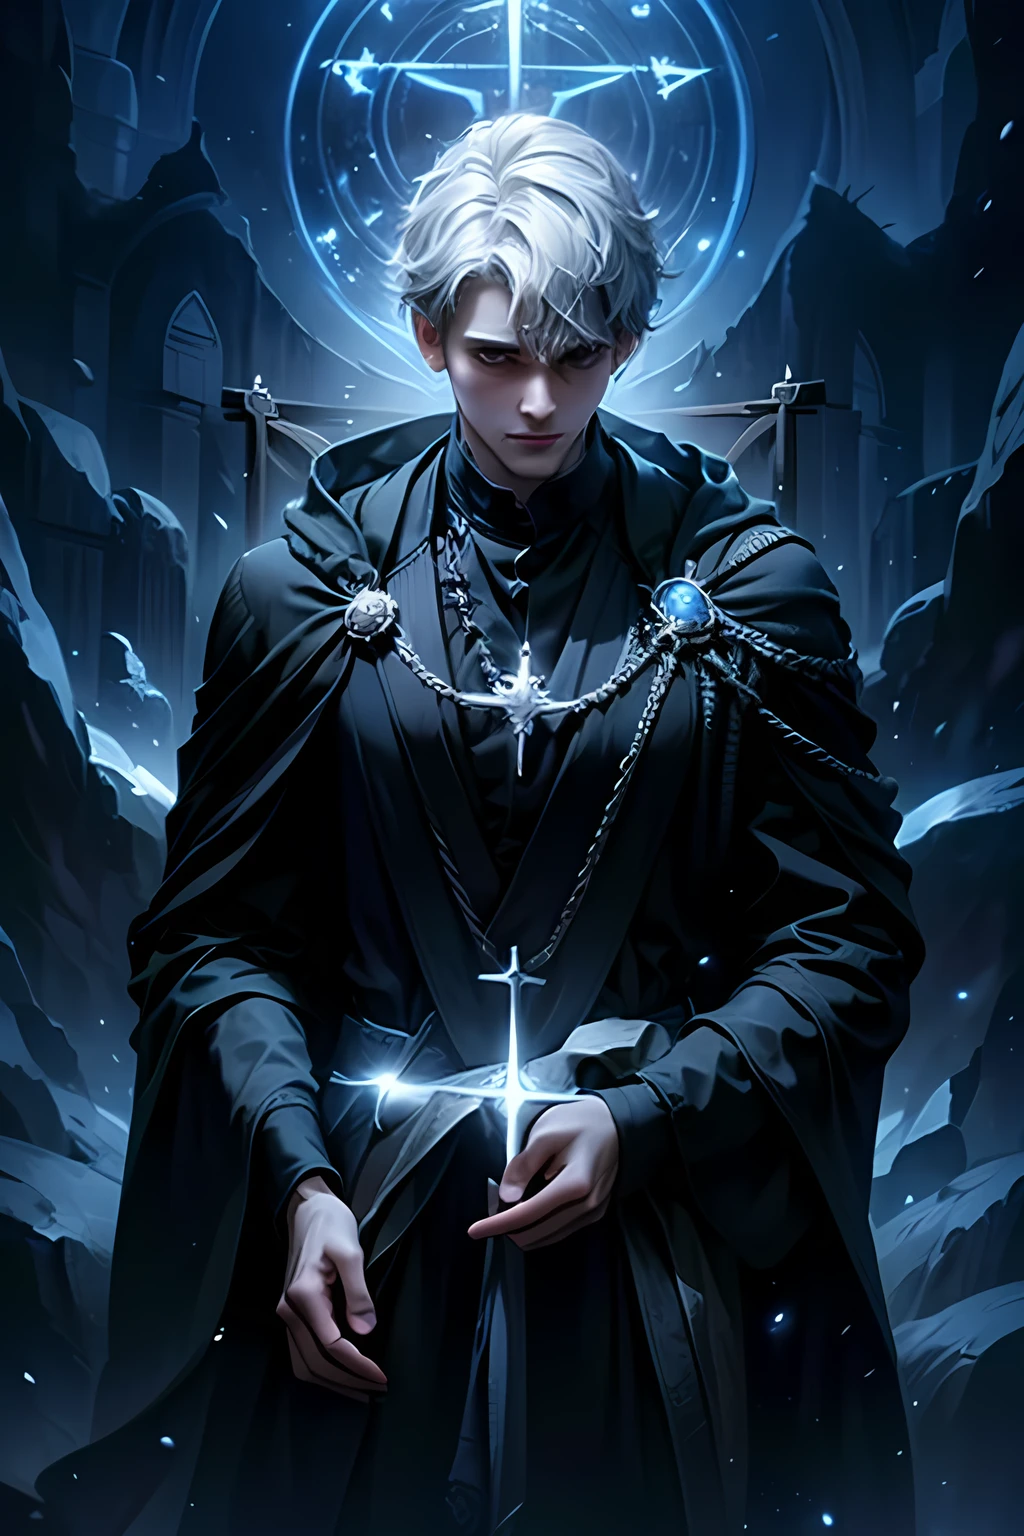 (最高品質,高解像度),
銀髪の短い28歳の男性,
エクソシスト魔術師,
19世紀のイギリス,
暗いマントを着ている,
十字架を背負う,
五芒星に囲まれた,
暗く神秘的な雰囲気の中で.